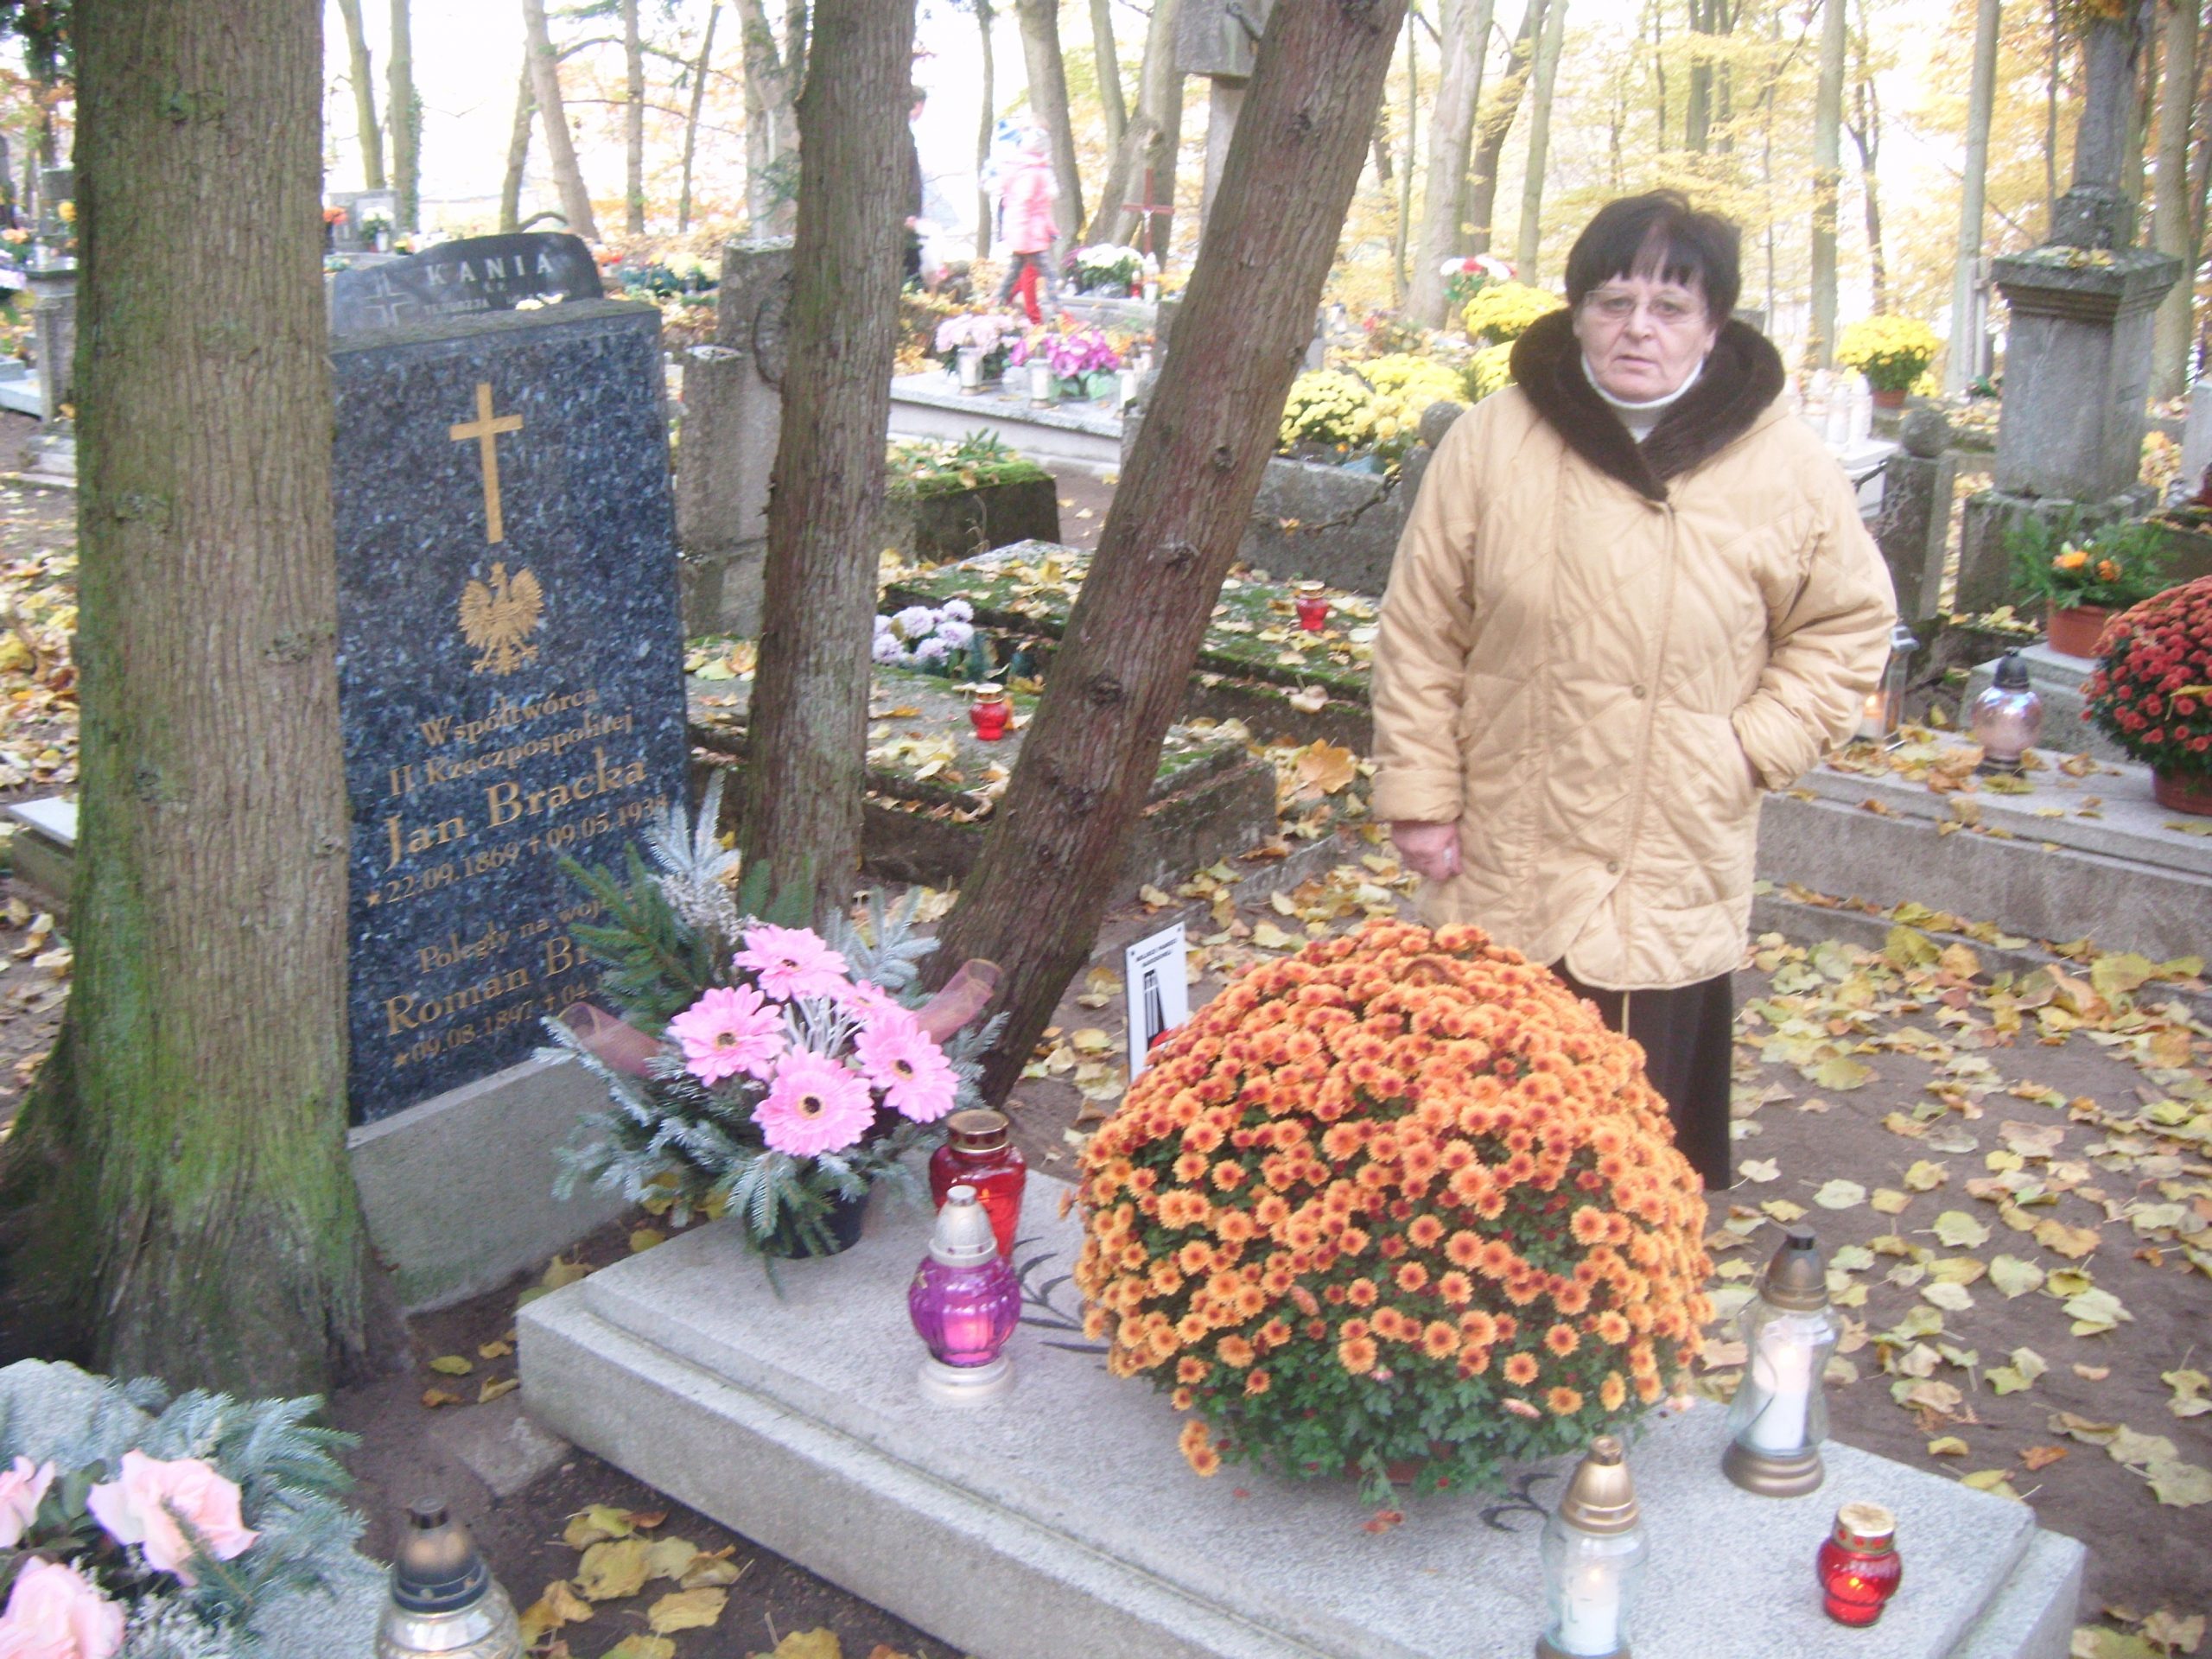 Wnuczka Renata Bracka przy grobie dziadka Jan Bracka Współtwórcy II RP - foto syn Tomasz Roman Bracka